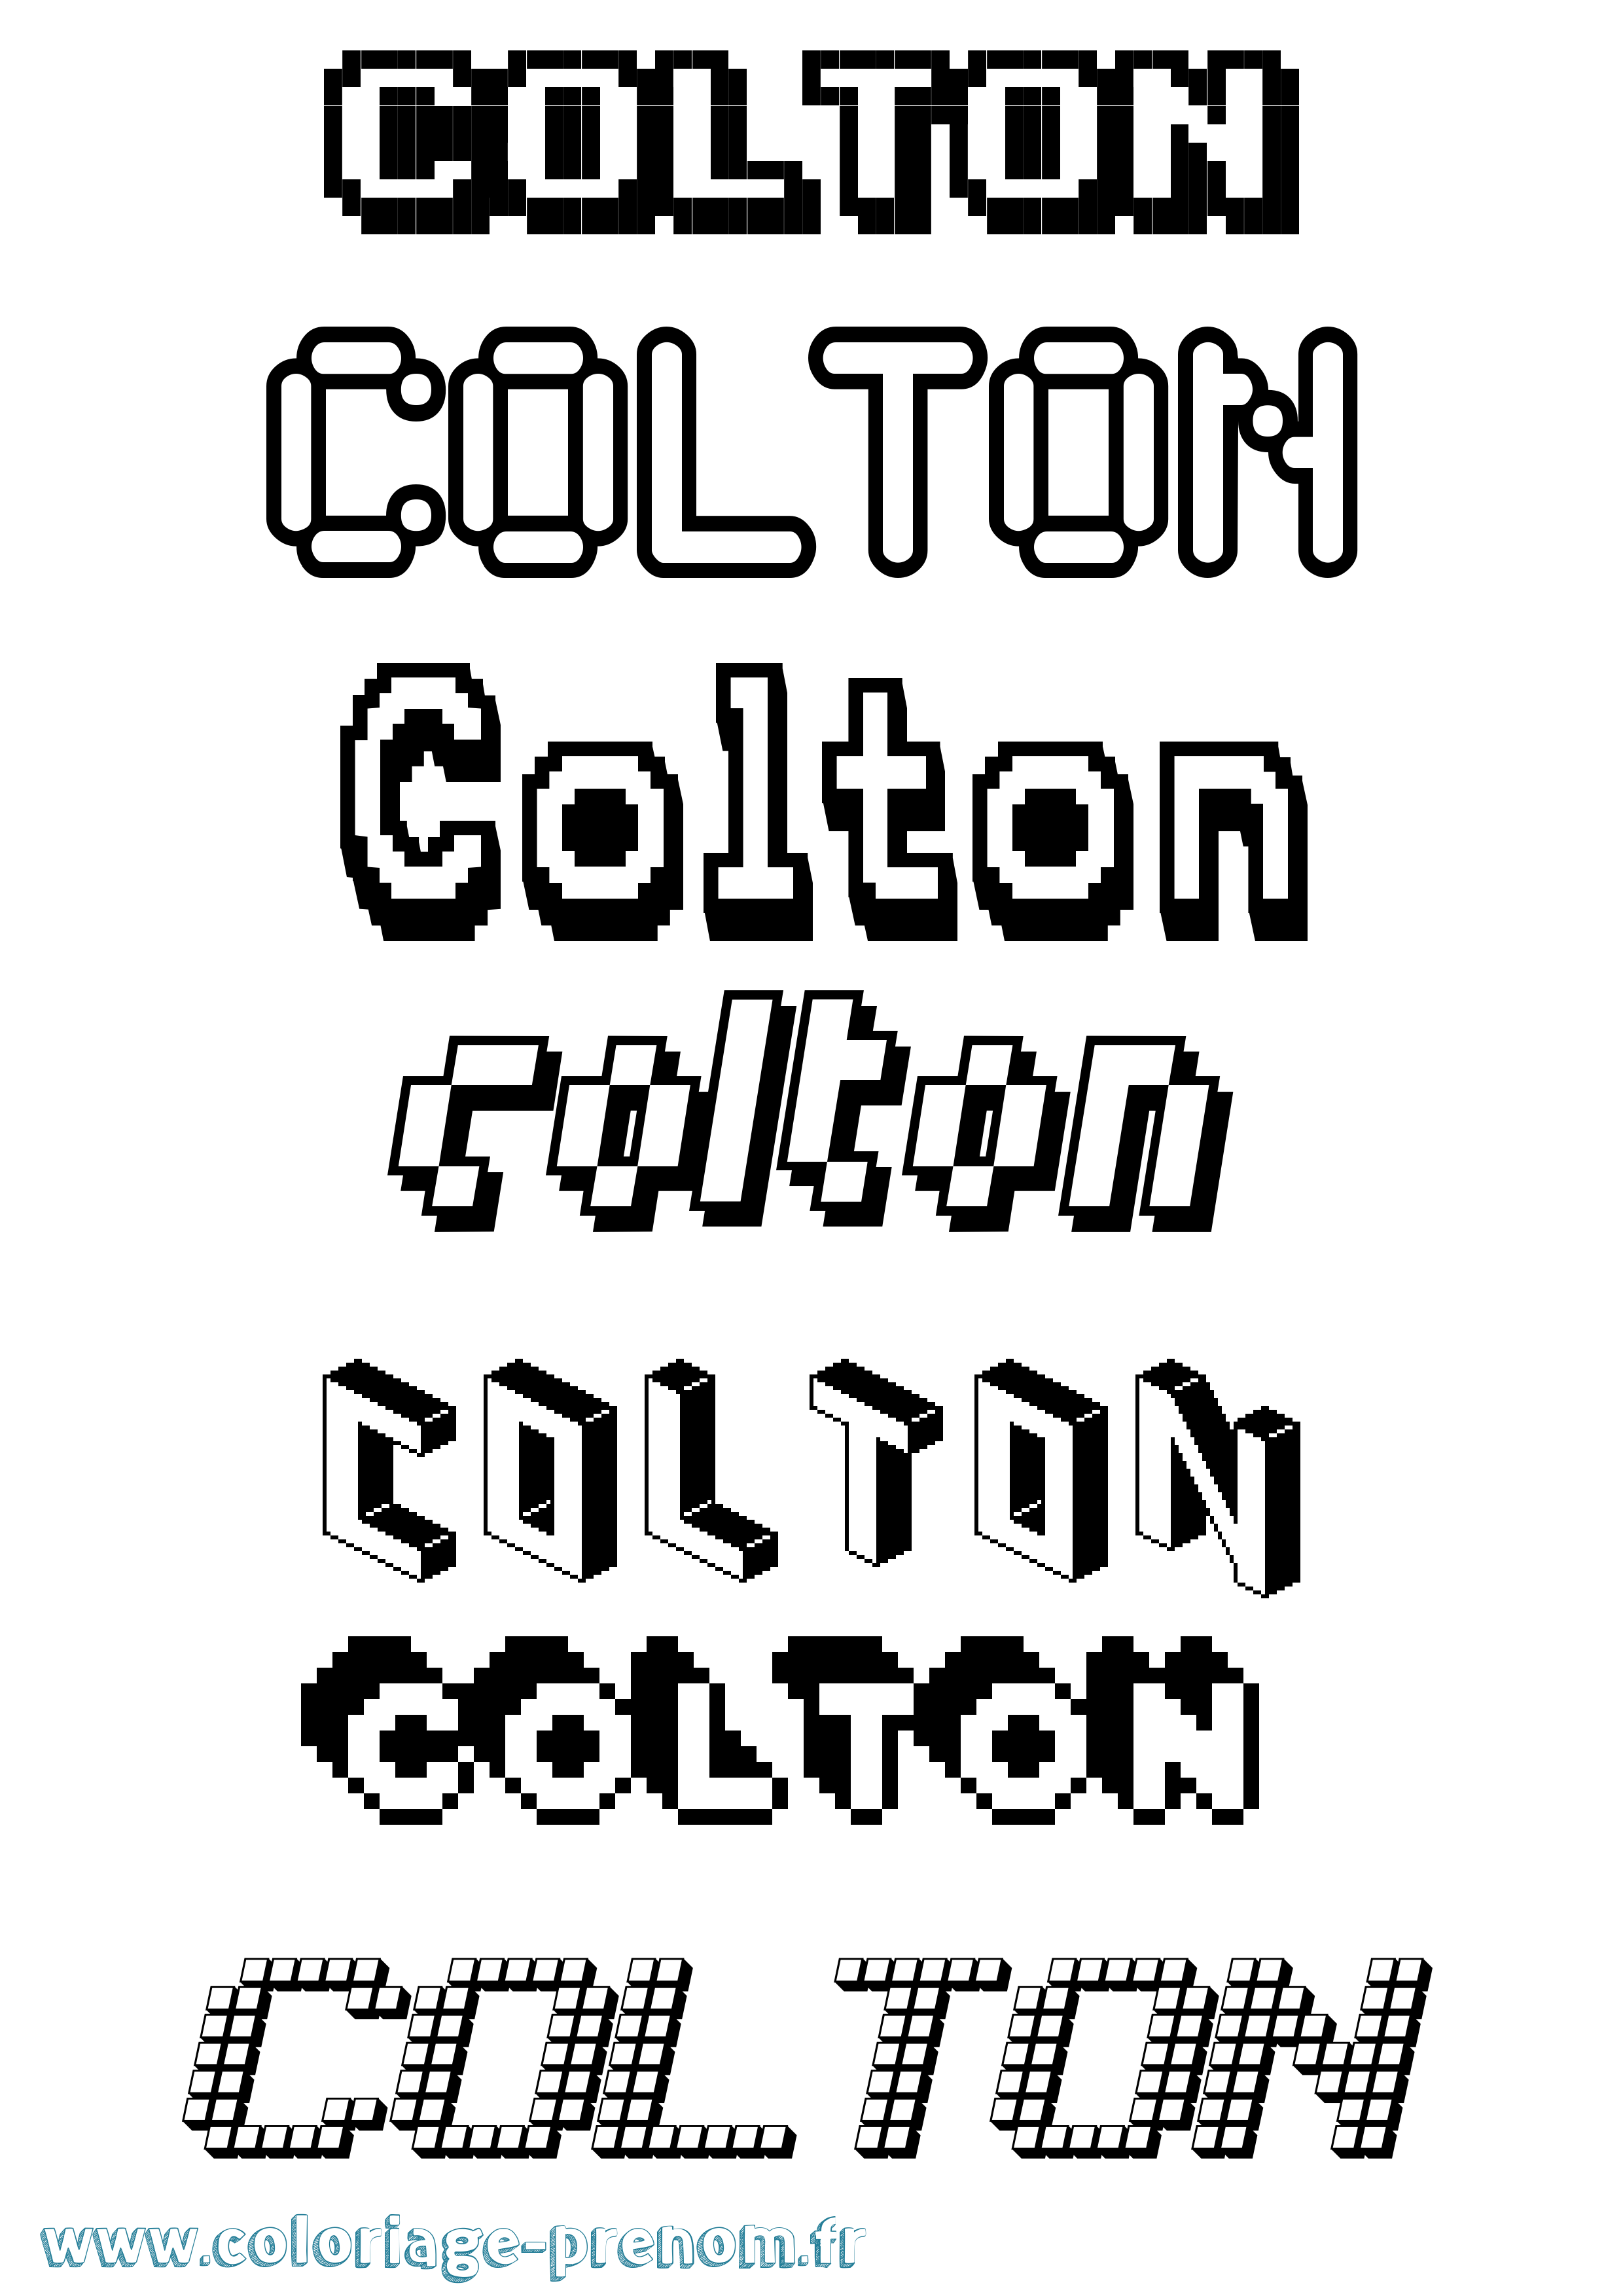 Coloriage prénom Colton Pixel